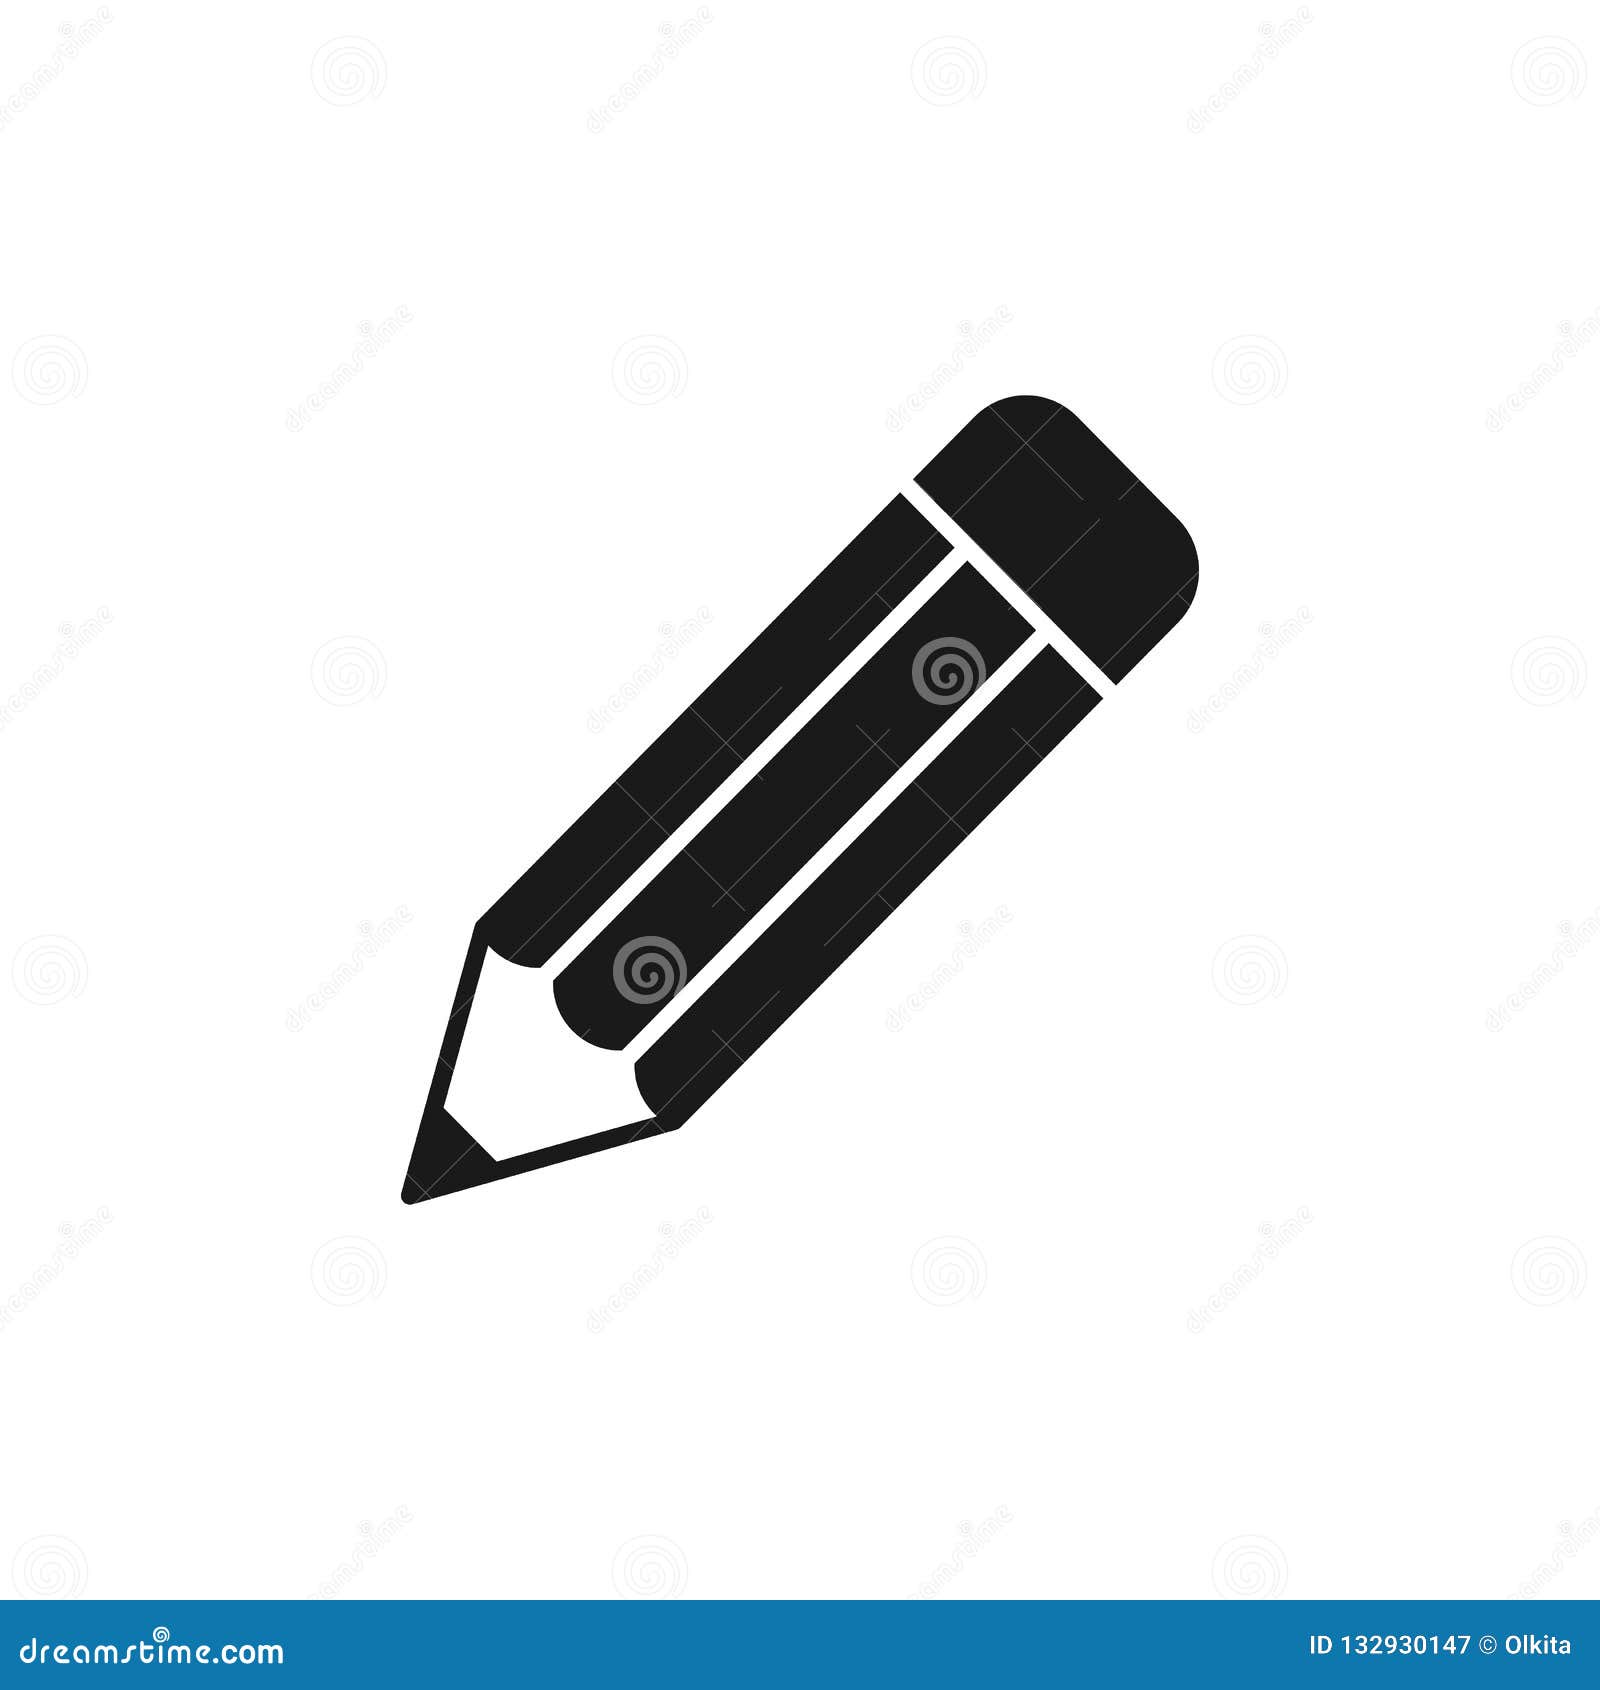 Objet De Dessin Au Crayon Dans Les Couleurs Noir Et Blancs, Icône Plate  Isolée. Clip Art Libres De Droits, Svg, Vecteurs Et Illustration. Image  60039926